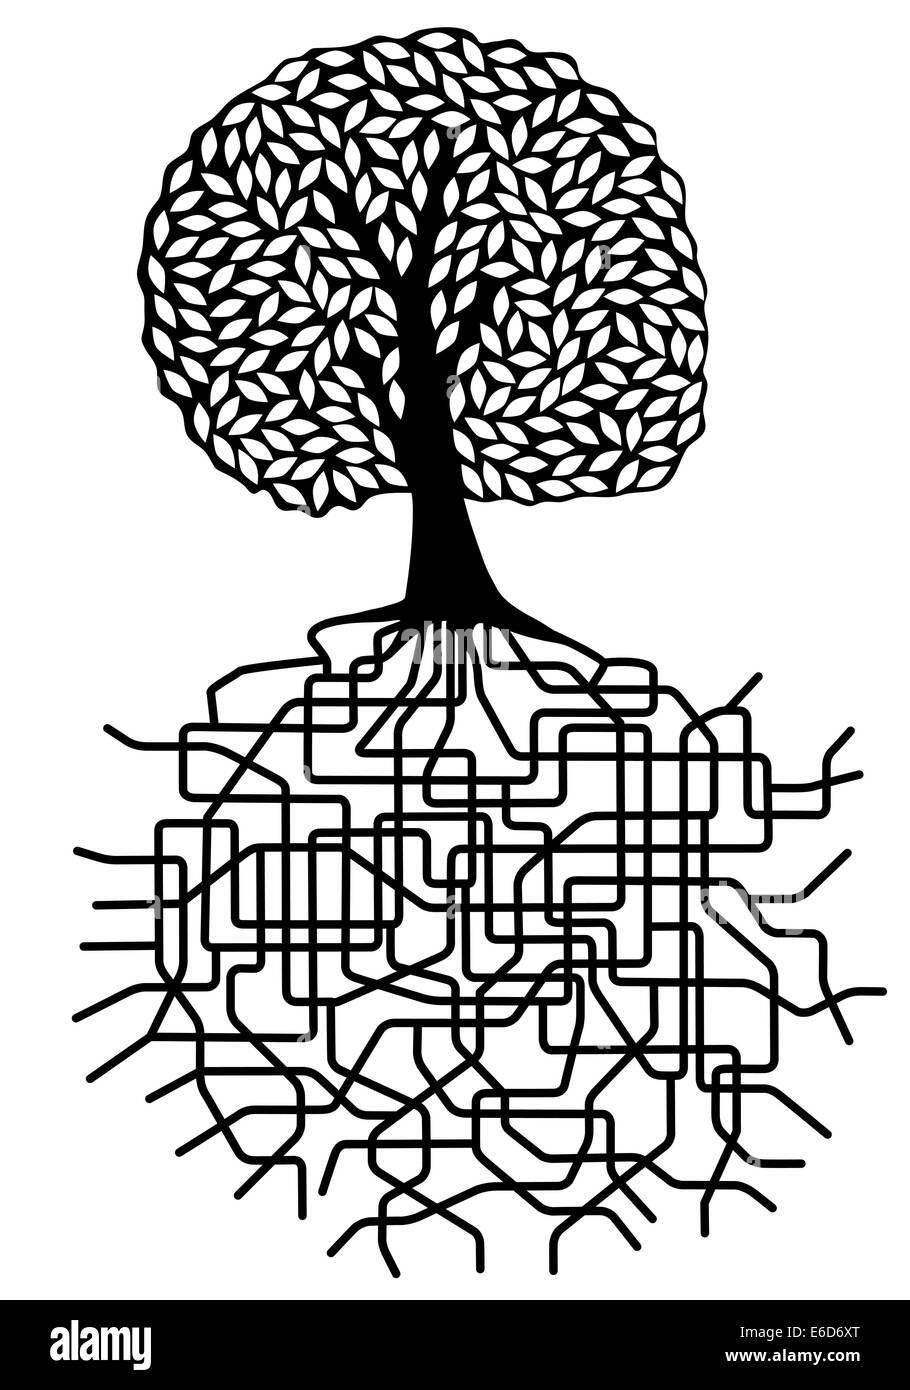 Bearbeitbares Vektor Design Von Einem Baum Mit Wurzel System Stock Vektorgrafik Alamy